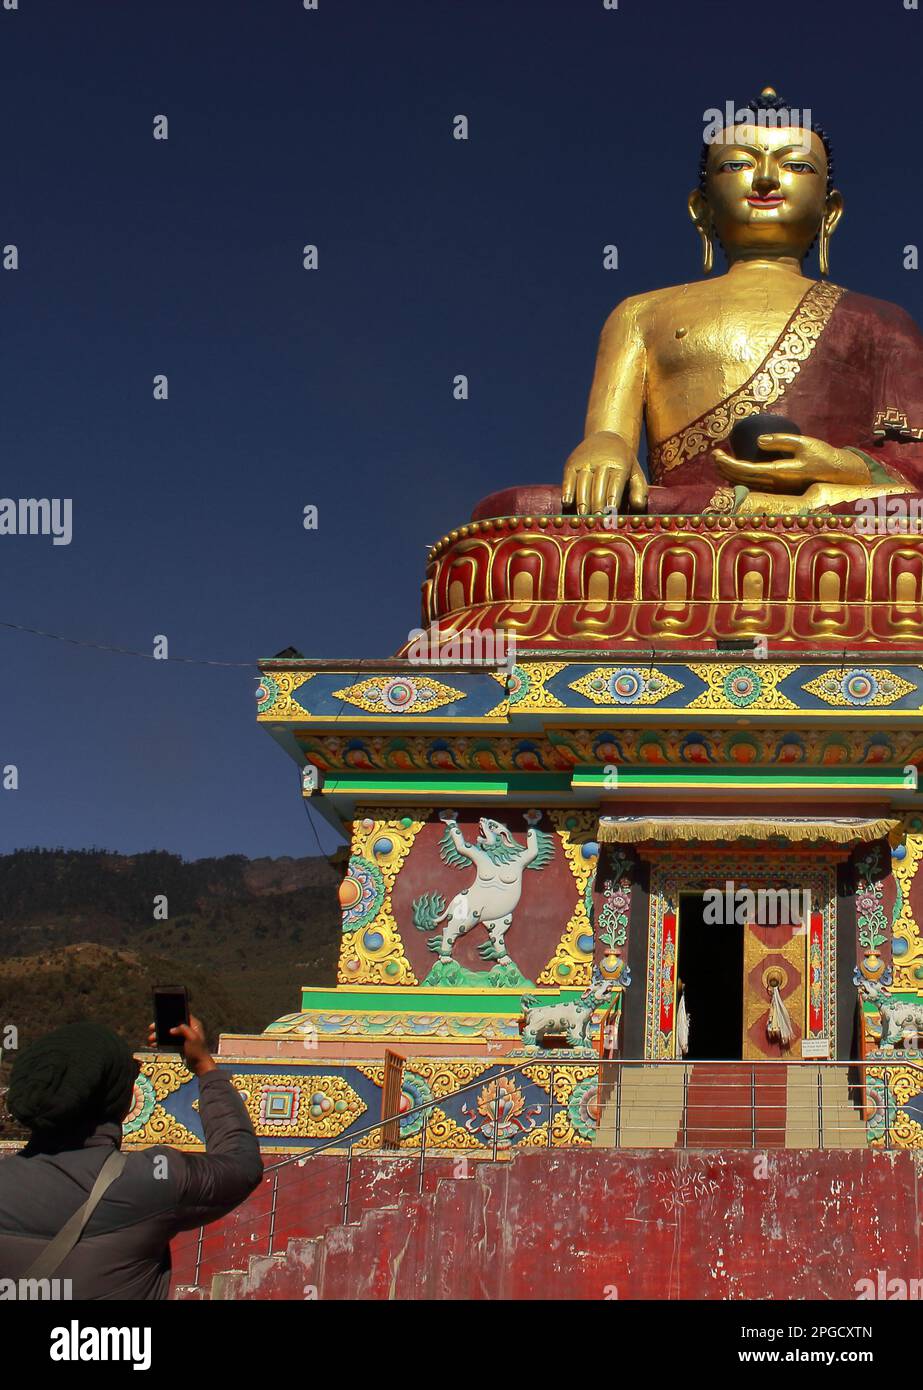 Tawang, Arunachal Pradesh, Inde - 8th décembre 2019 : statue de bouddha géant de tawang, l'une des attractions touristiques les plus populaires de la station de la colline de tawang Banque D'Images